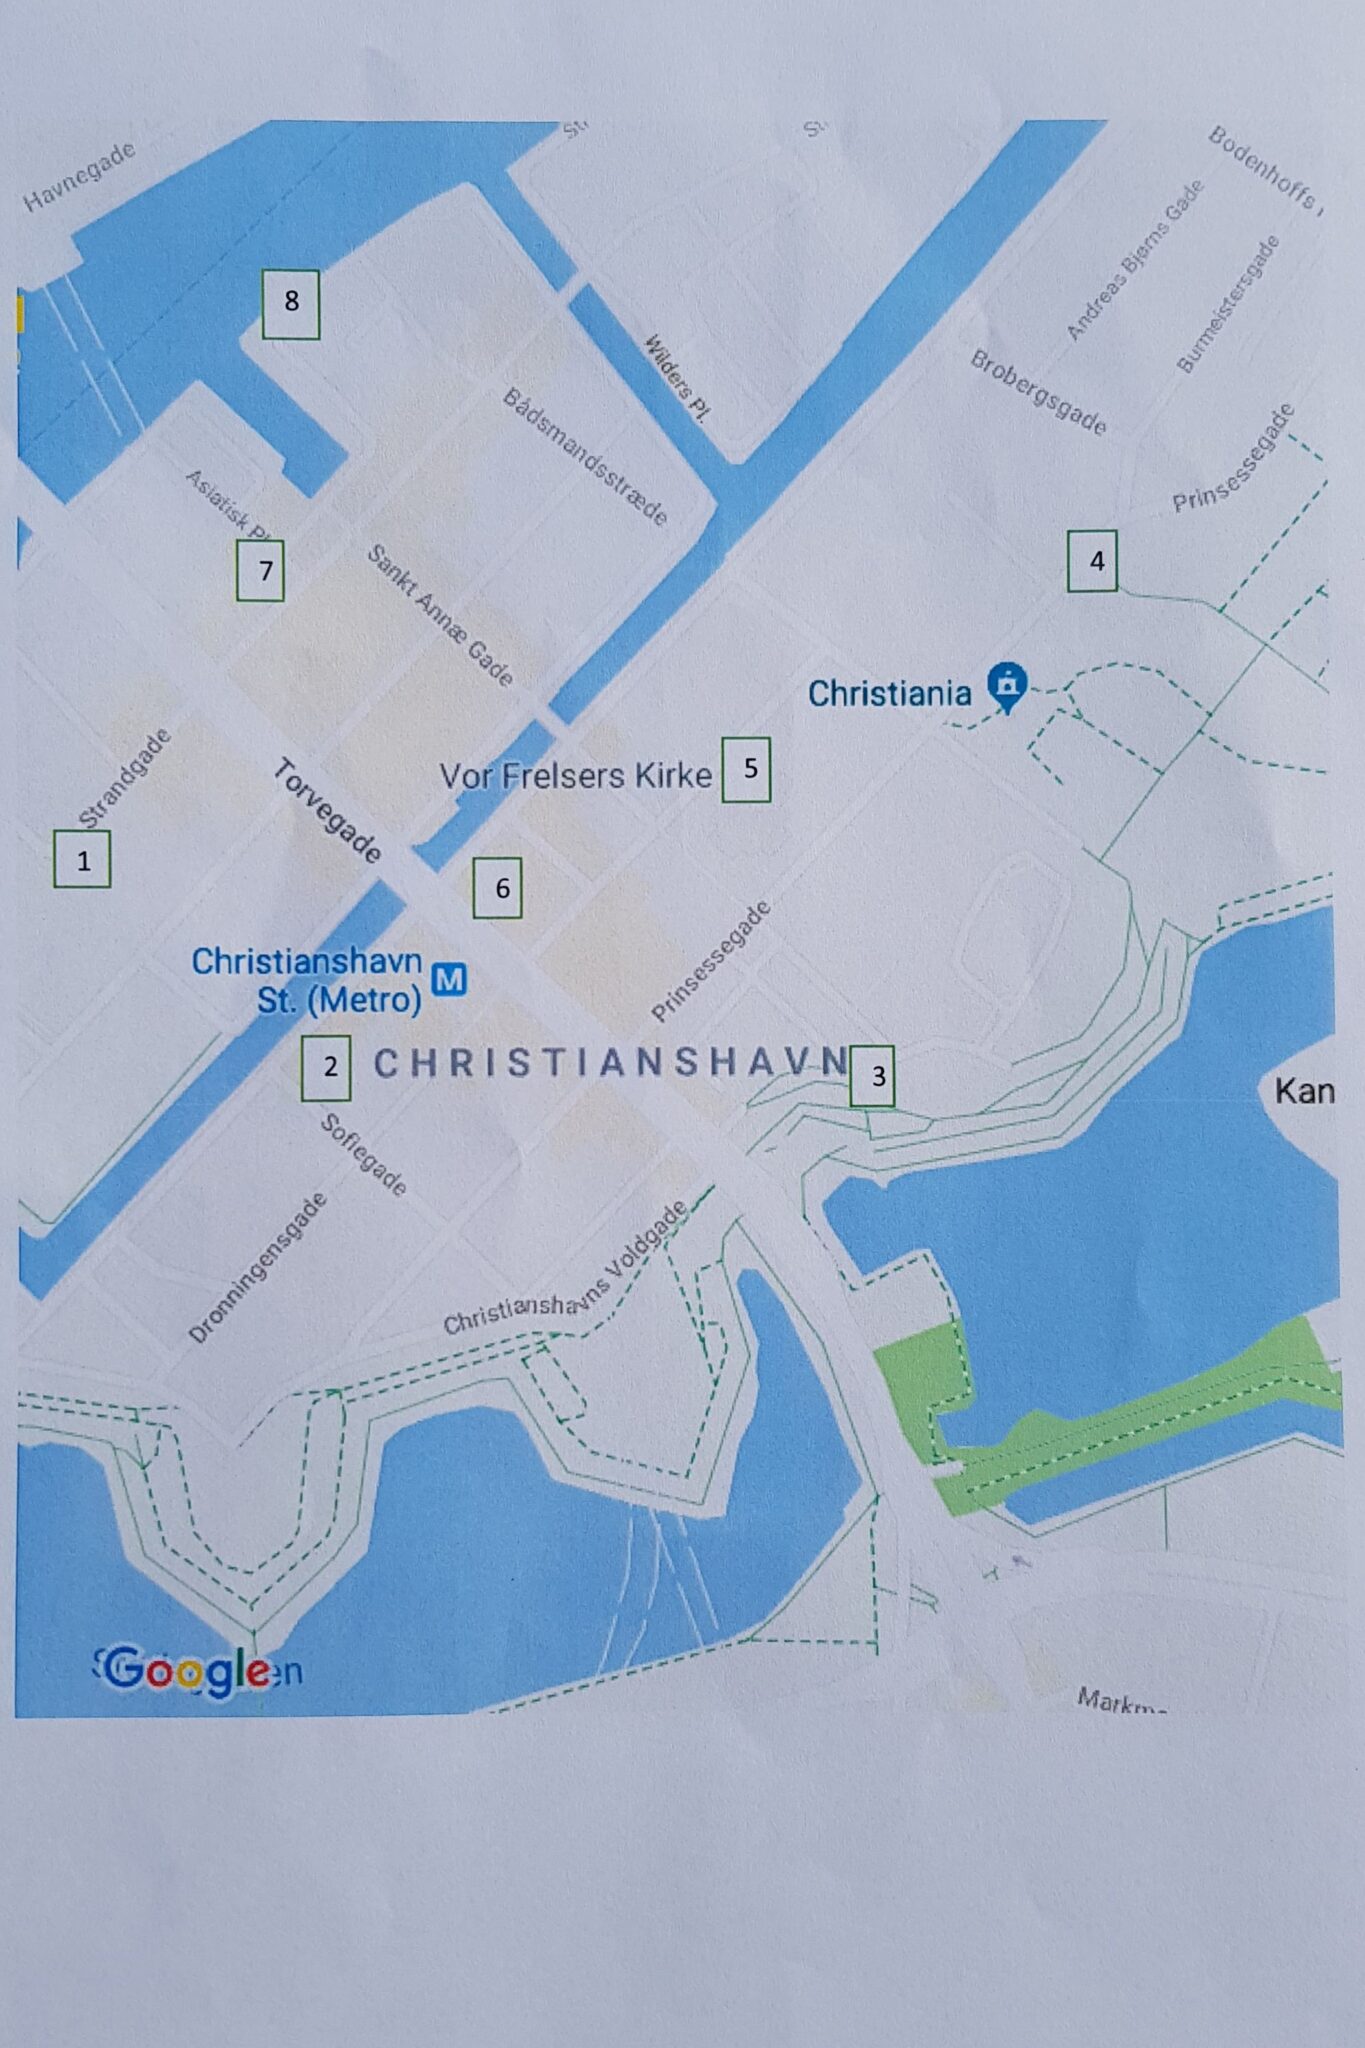 Skattejagt - kort over Christianshavn